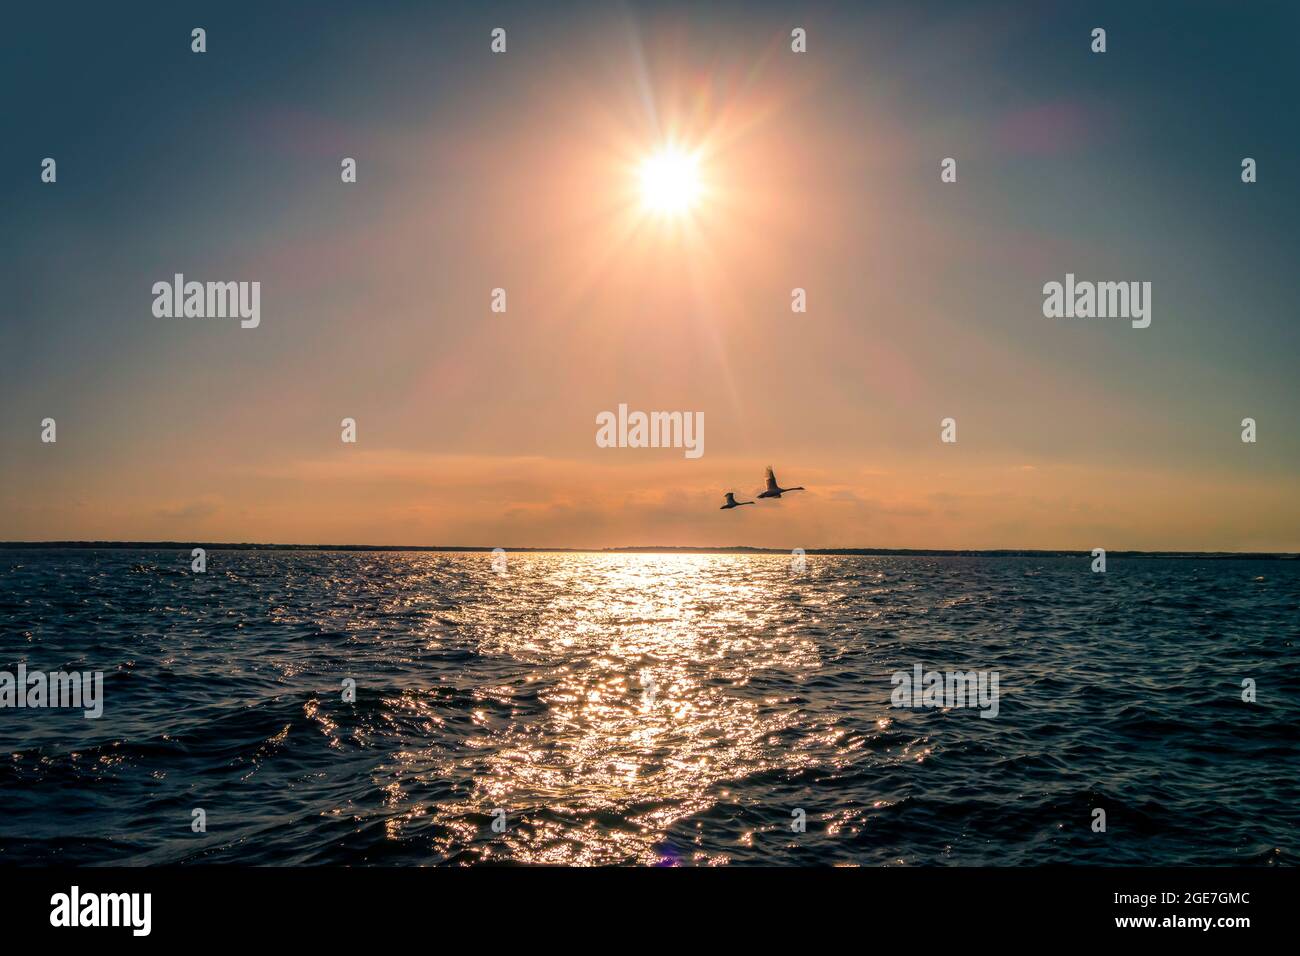 due sagome di oche volanti sulle acque dell'oceano e cielo solare luminoso Foto Stock